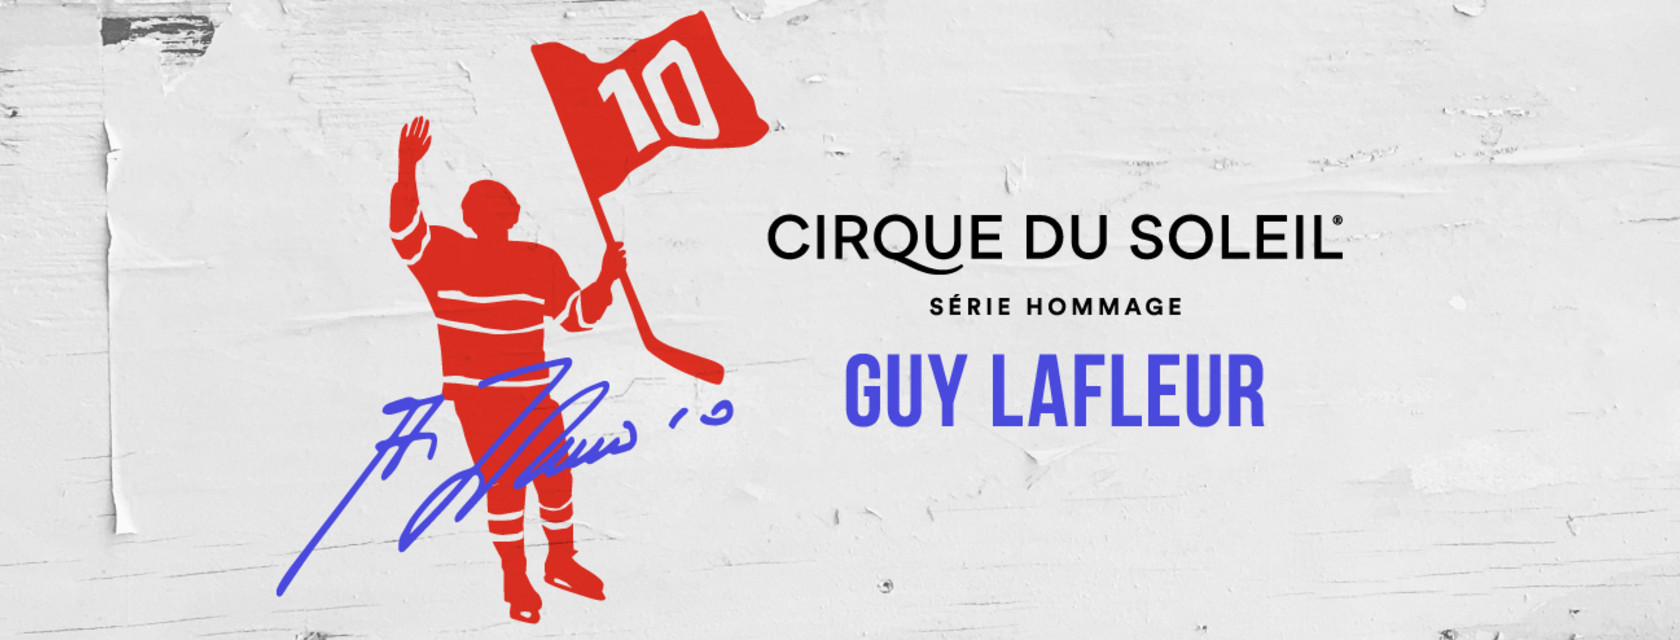 La septième création de la Série Hommage du Cirque du Soleil honorera le légendaire hockeyeur, Guy Lafleur!